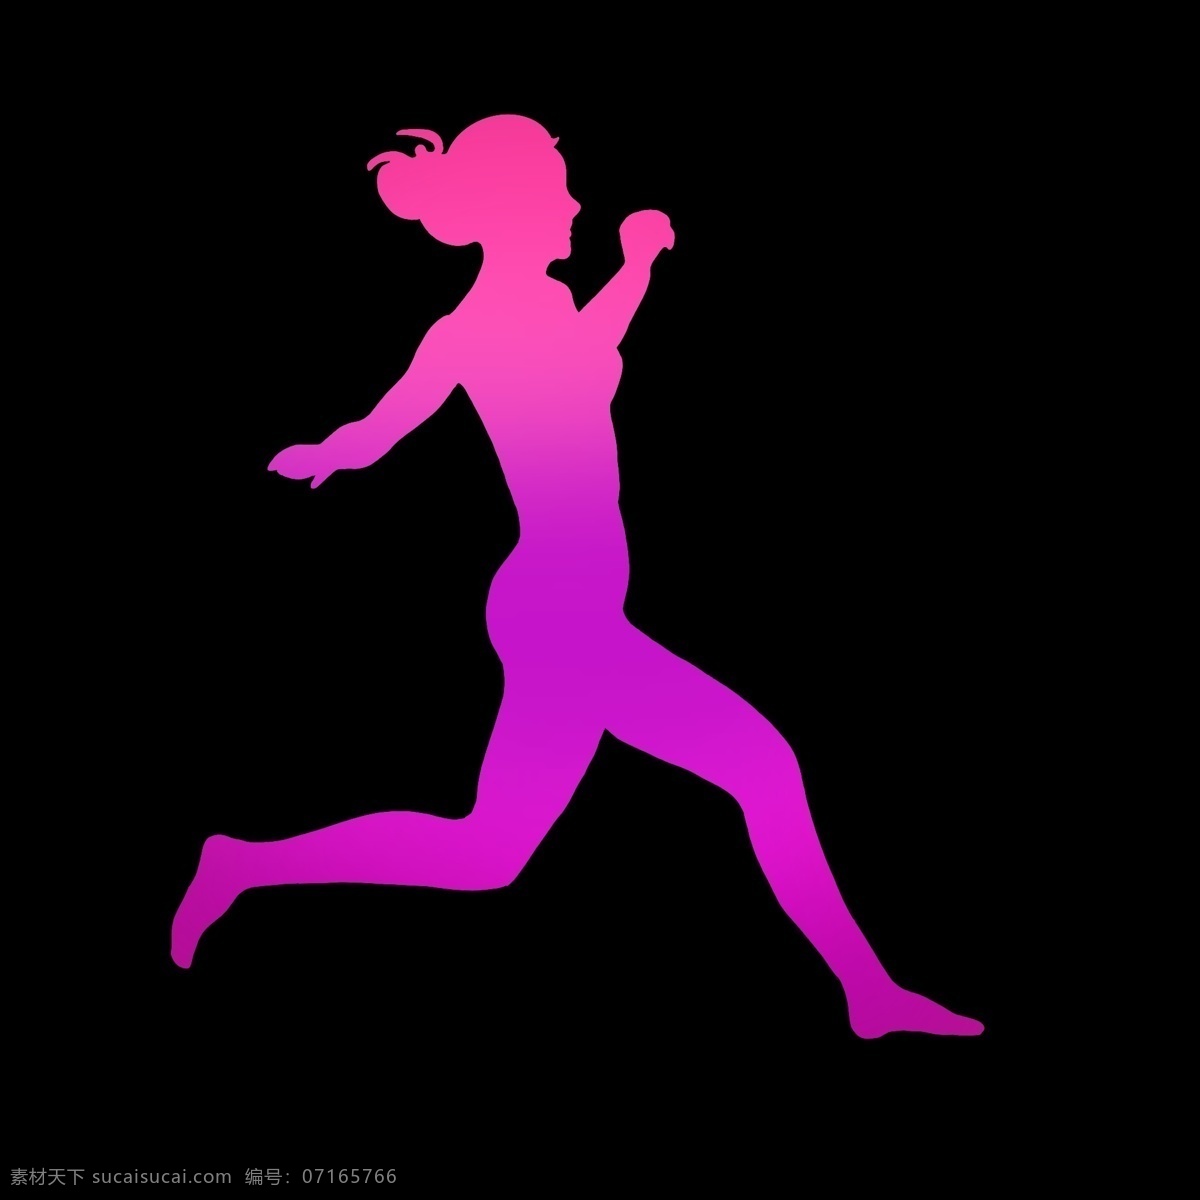 暖色 渐变 奔跑 女孩 奔跑的女孩 女士 头发挽起 形状 剪影 图案 动作 奔跑的样子 速度 运动 激情 节奏 ppt可用 纯色 简约 简洁 简单